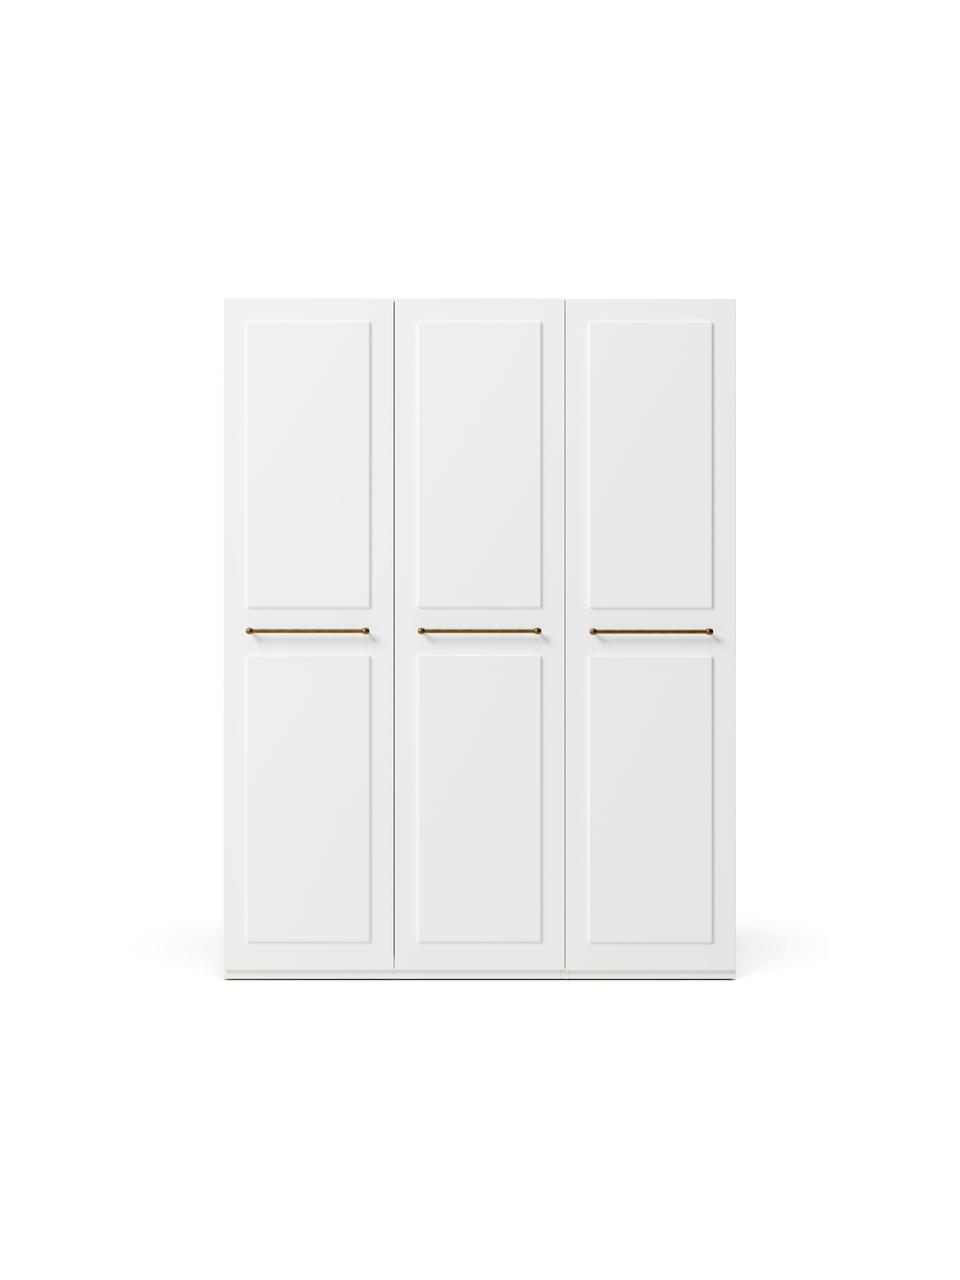 Modularer Drehtürenschrank Charlotte in Weiß mit 3 Türen, verschiedene Varianten, Korpus: Spanplatte, melaminbeschi, Weiß, 150 x 200 cm